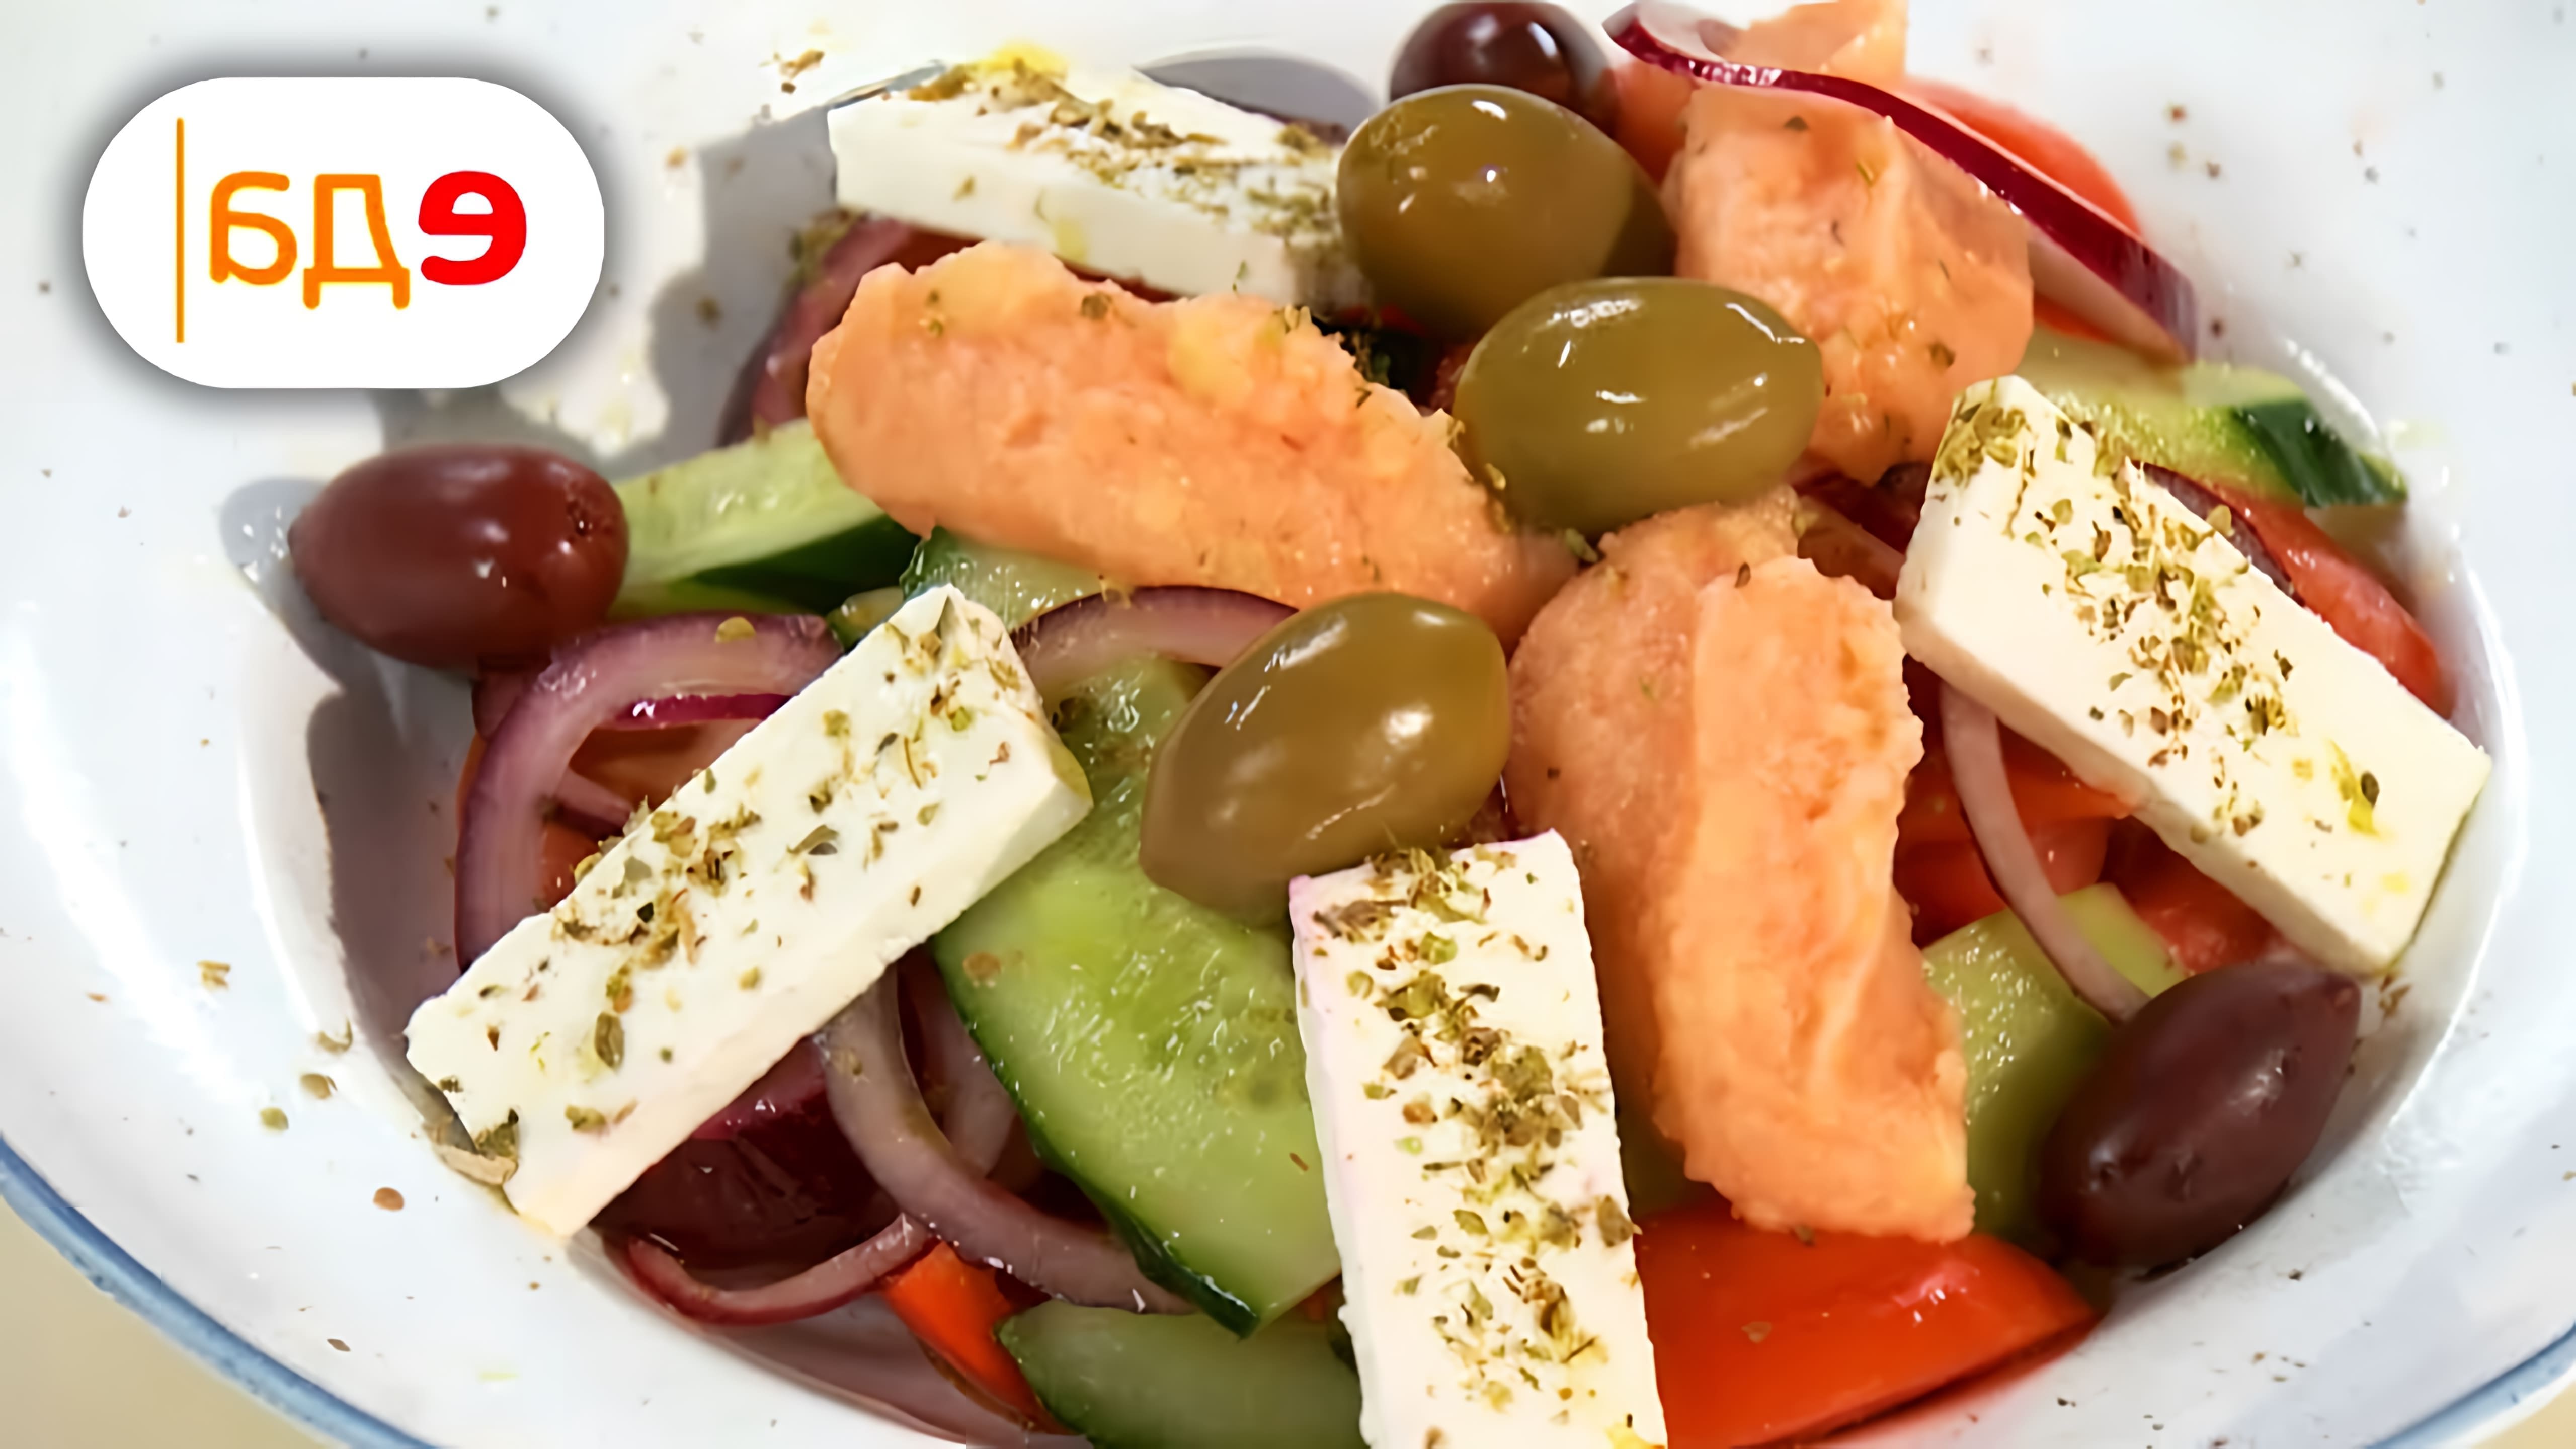 В этом видео Илья Лазерсон готовит два блюда из греческой кухни: греческий салат с картофельным пюре и запеканку поститься